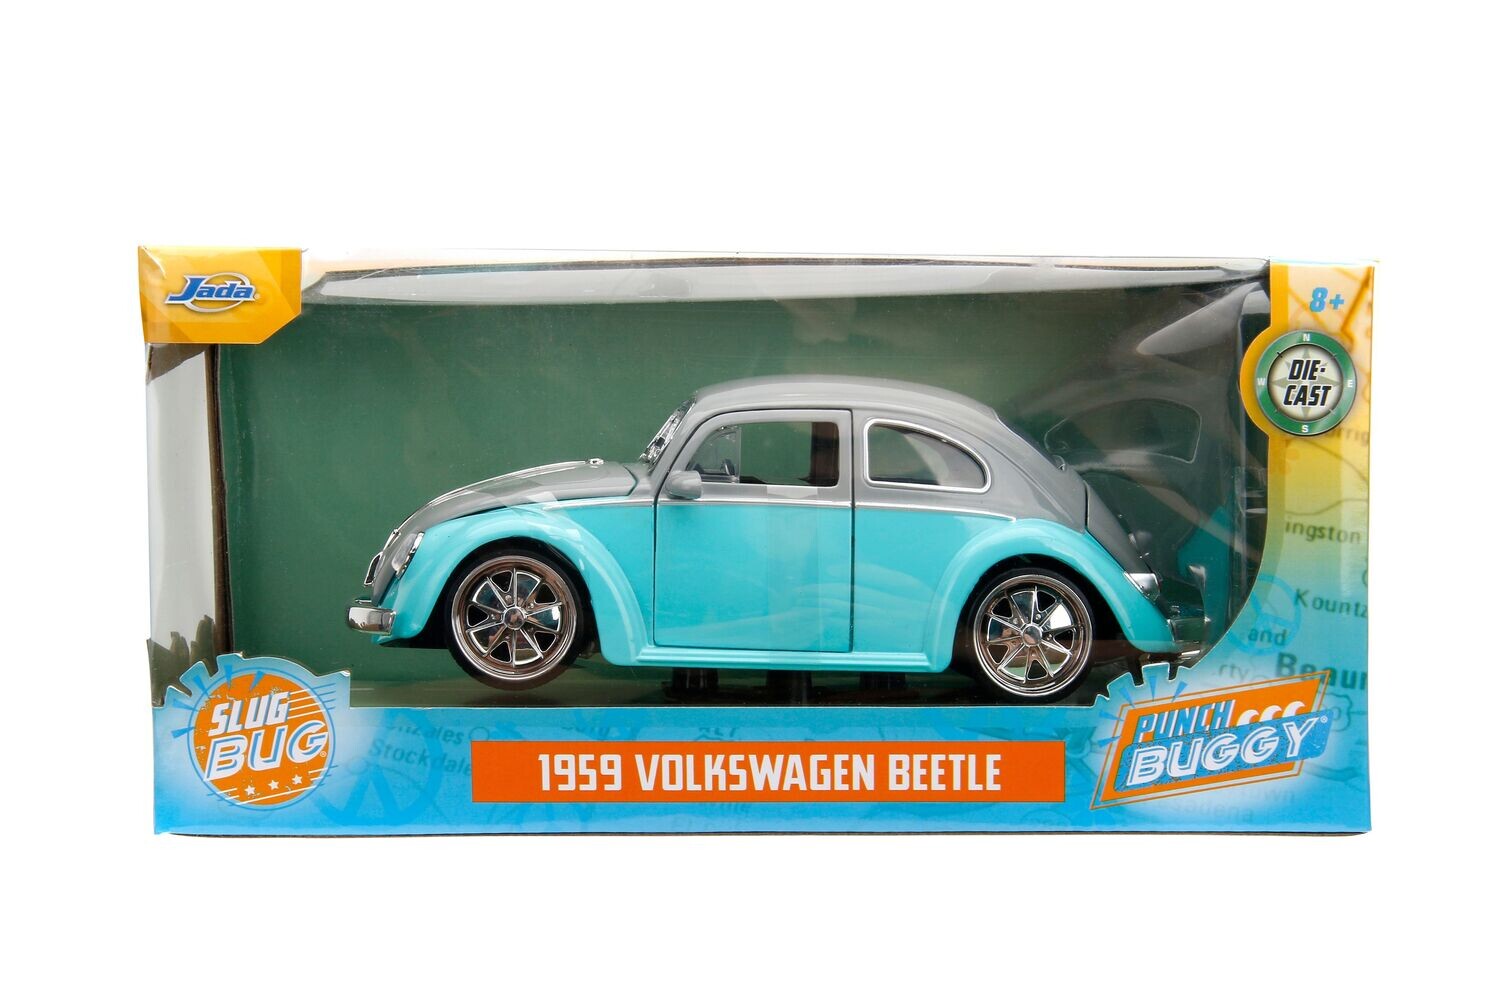 1959 Volkswagen Beetle Punch Buggy